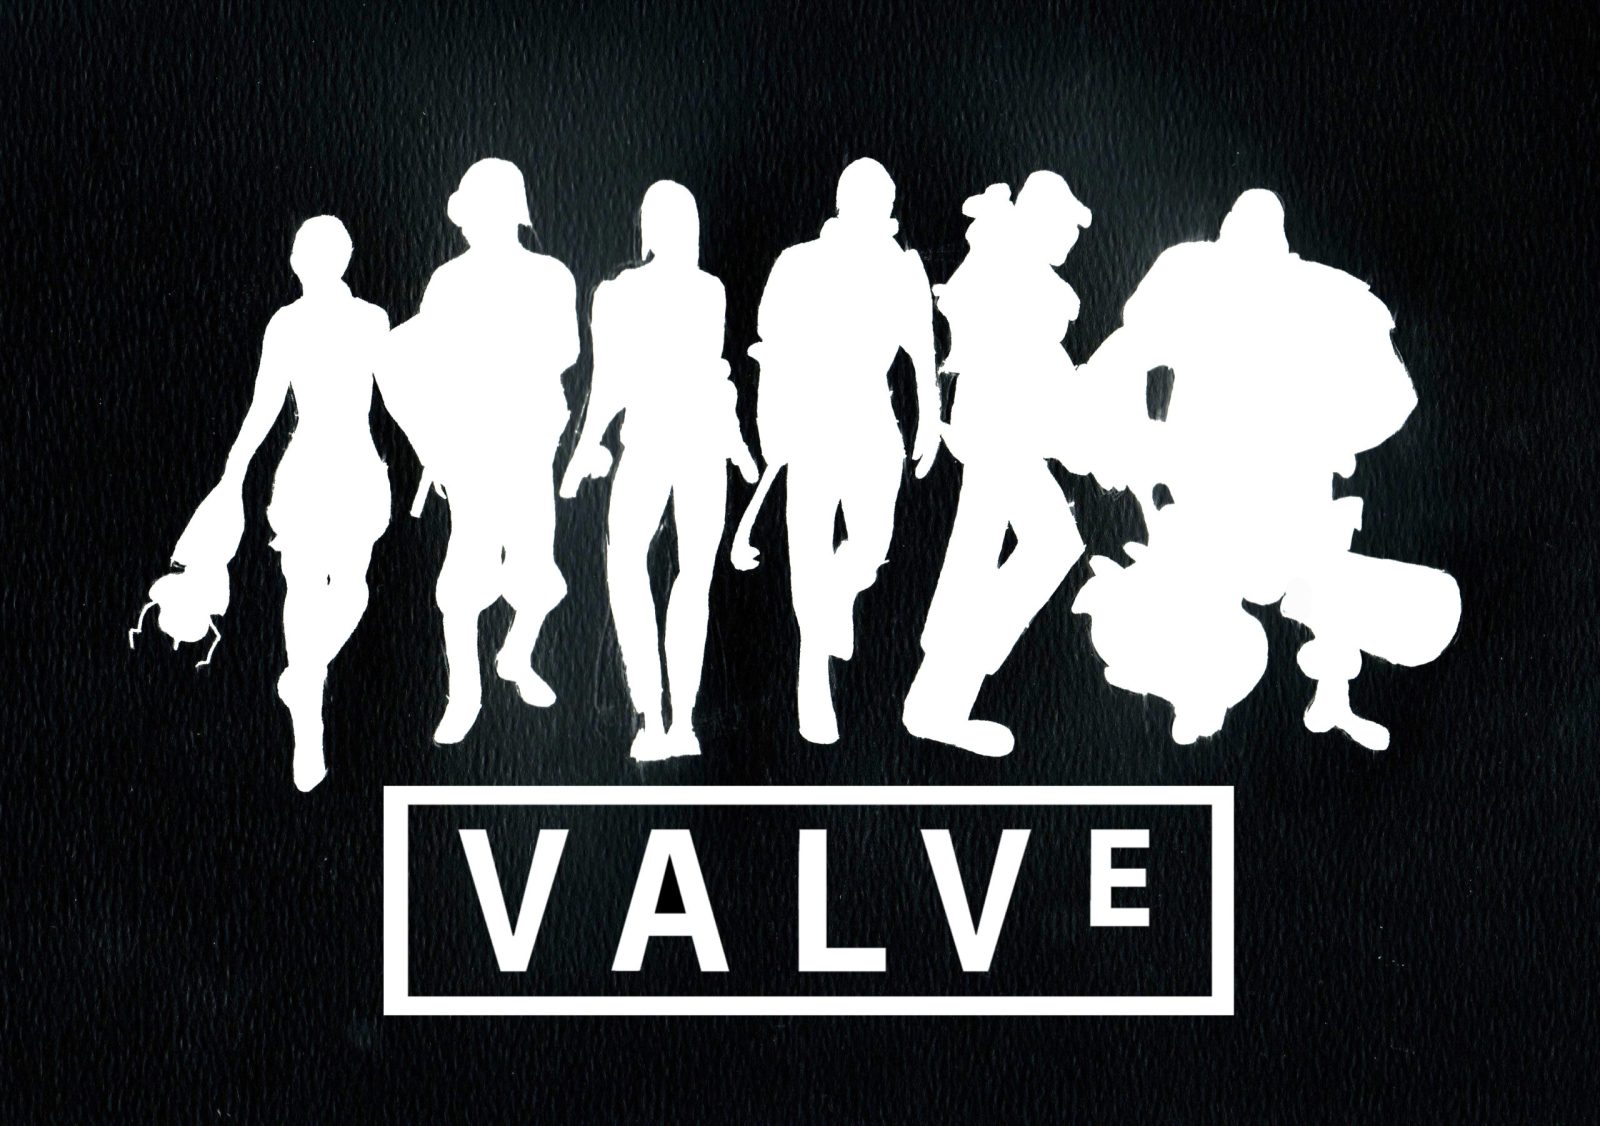 شرکت Valve به دنبال استخدام روانشناسان حرفه ای است